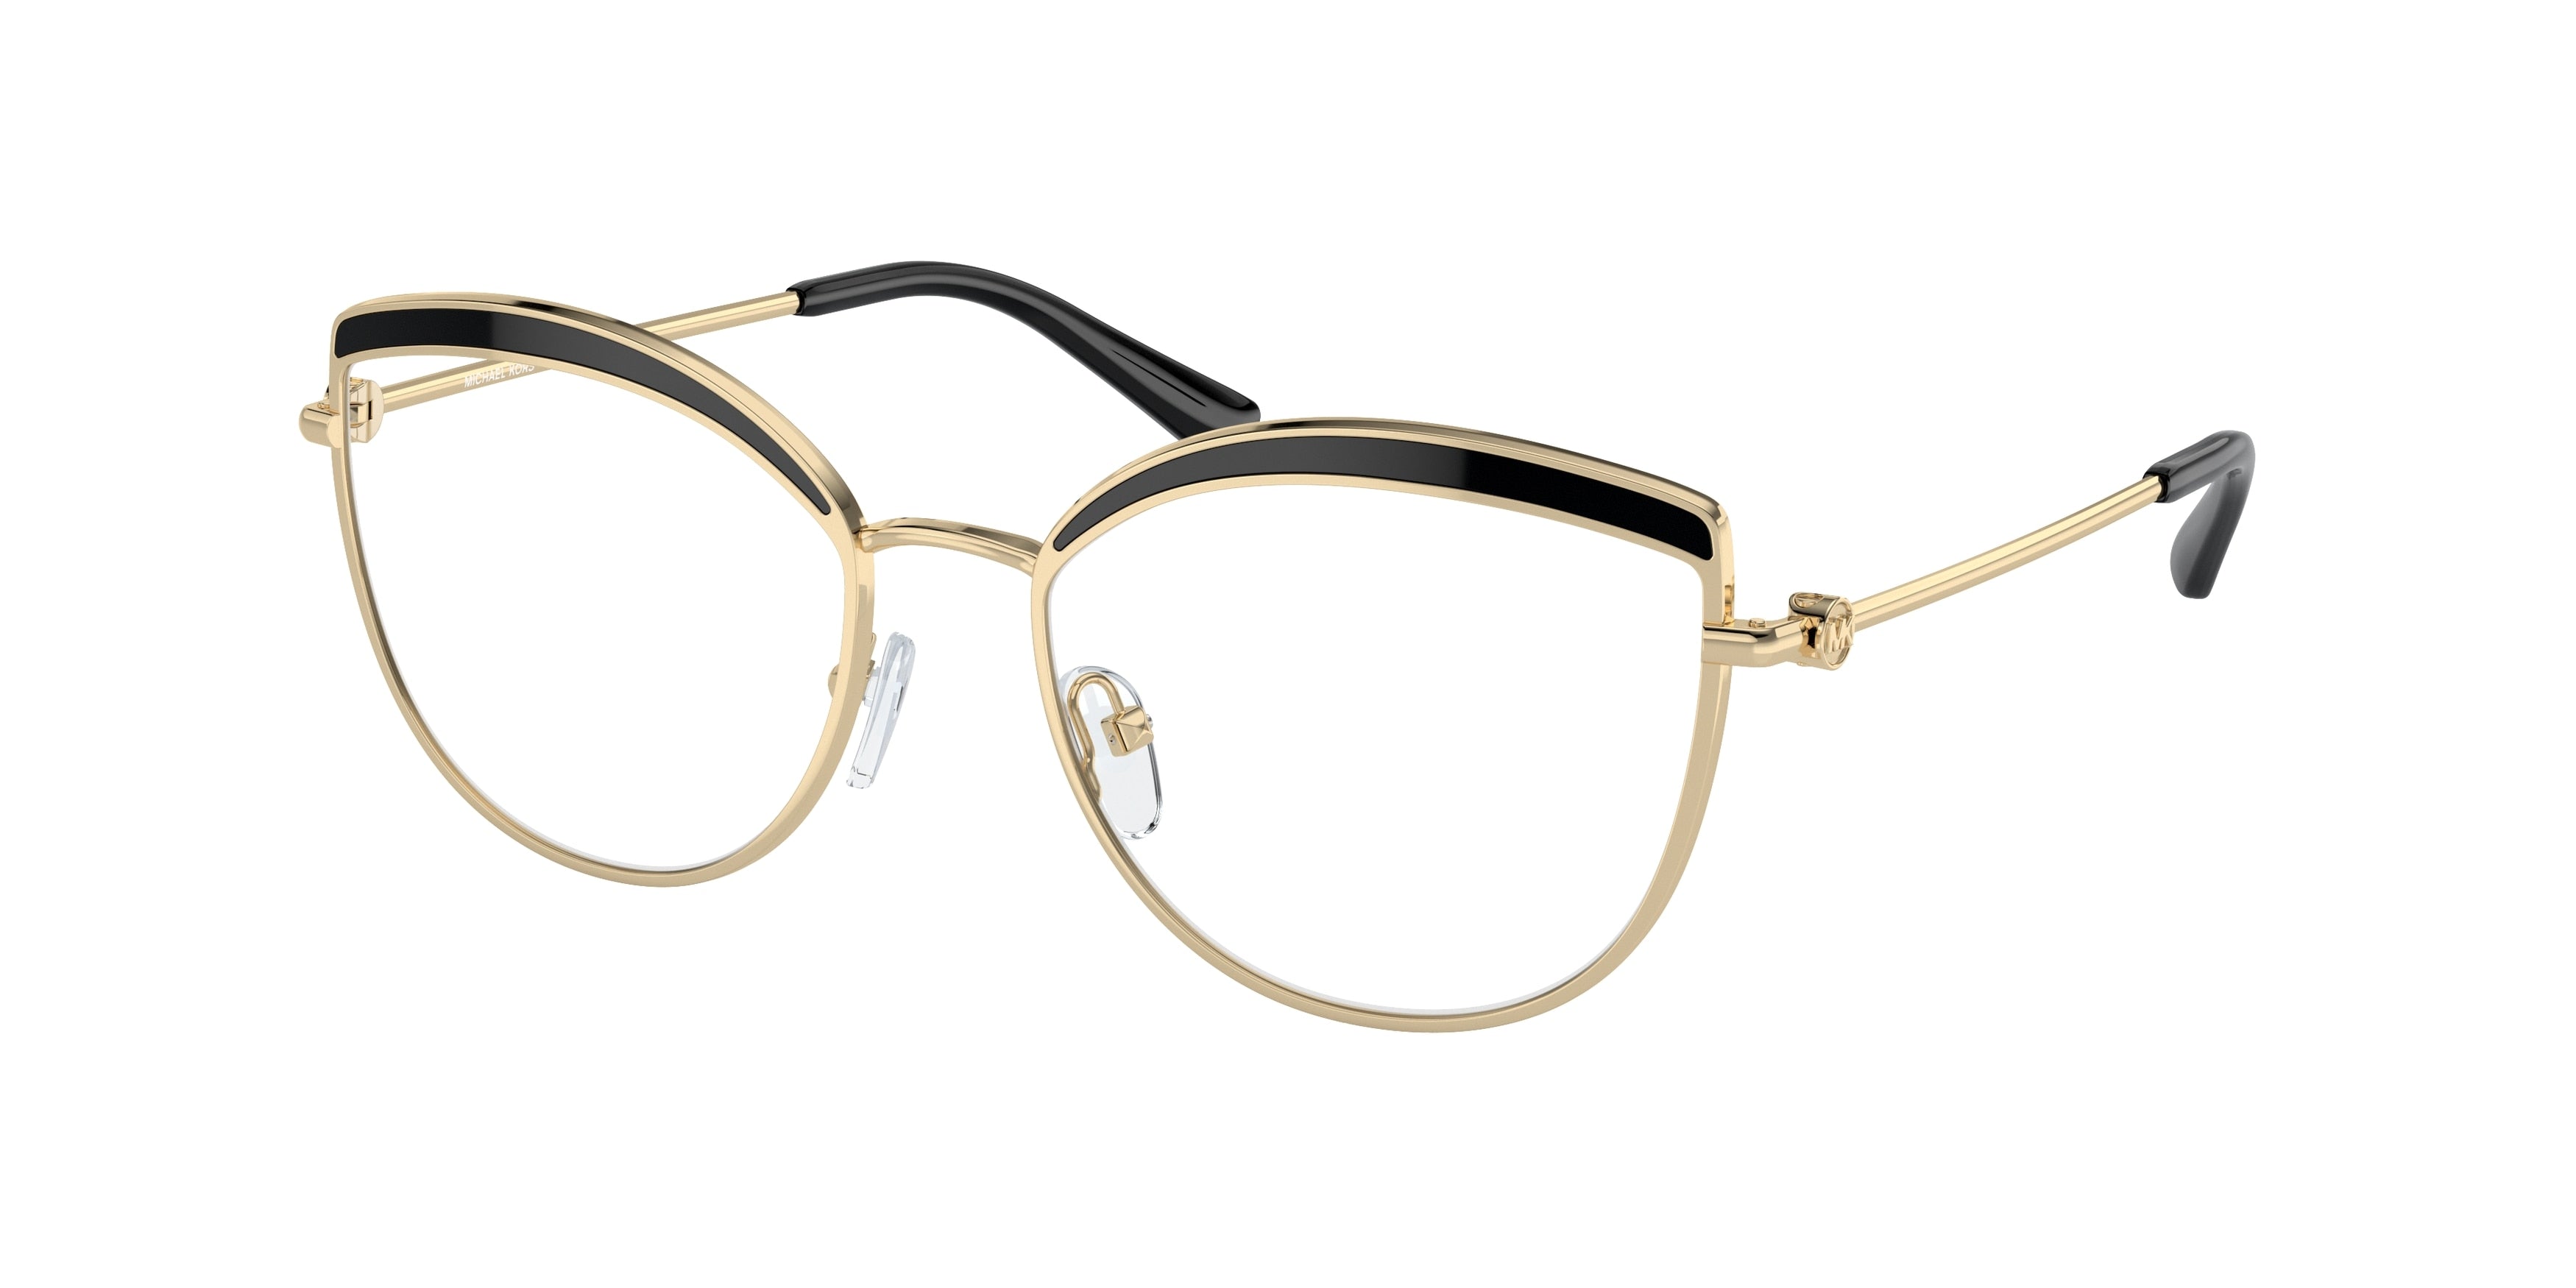 Michael Kors NAPIER MK3072 Cat Eye Eyeglasses  1014-Light Gold 54-140-17 - Color Map Gold